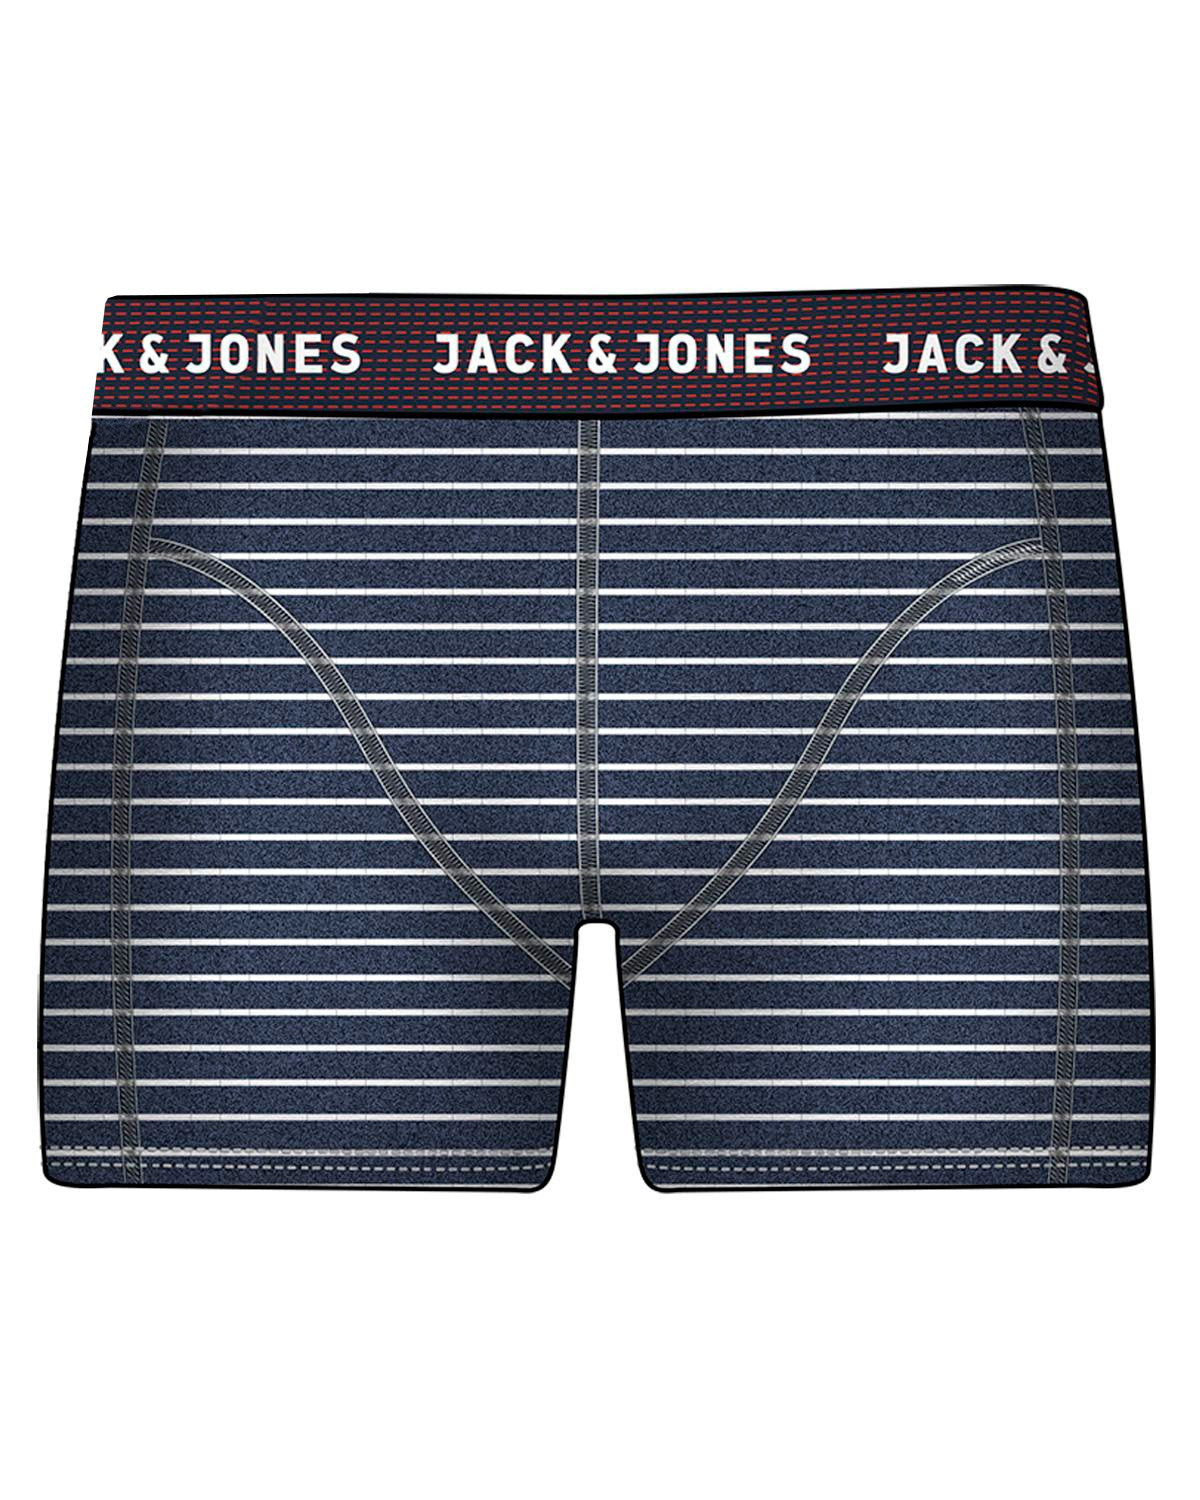 Jack & Jones Troketone Navy Blazer